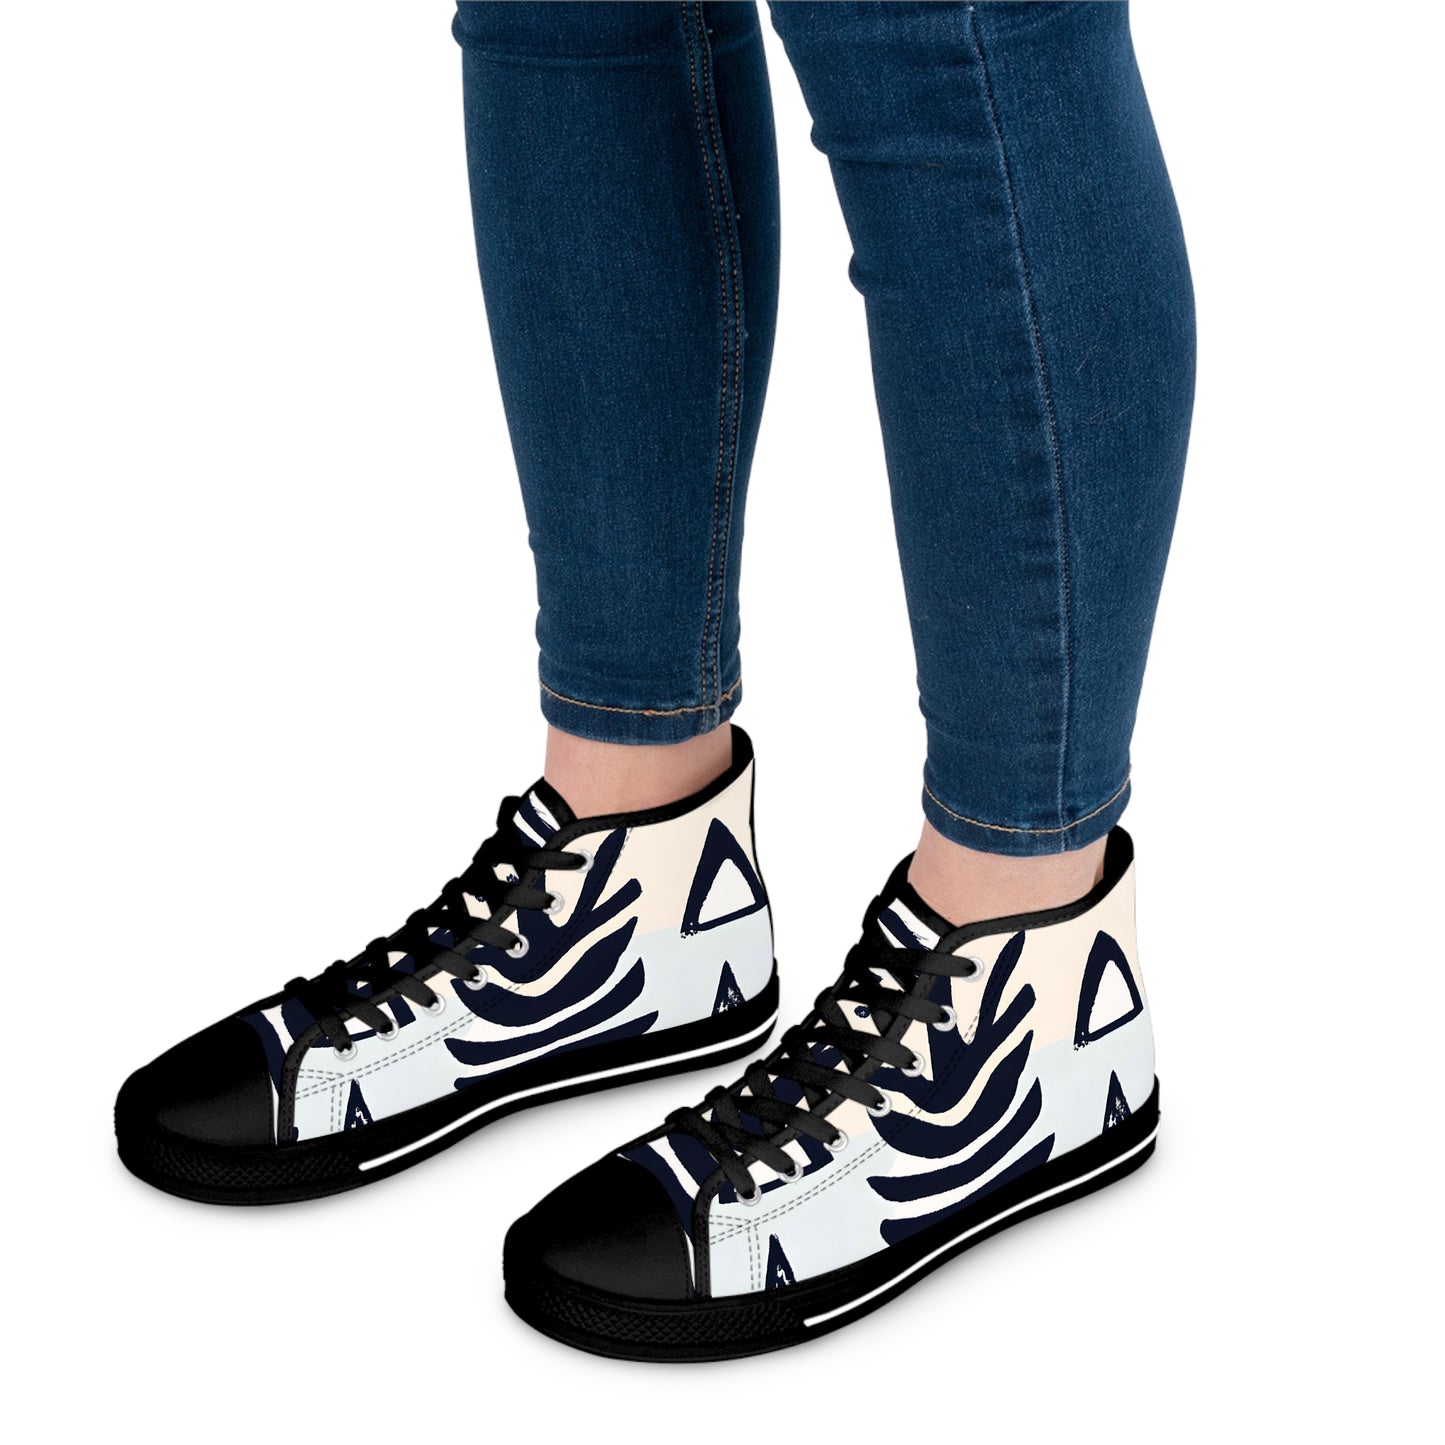 Gestura Millicent - Women's High-Top Sneakers